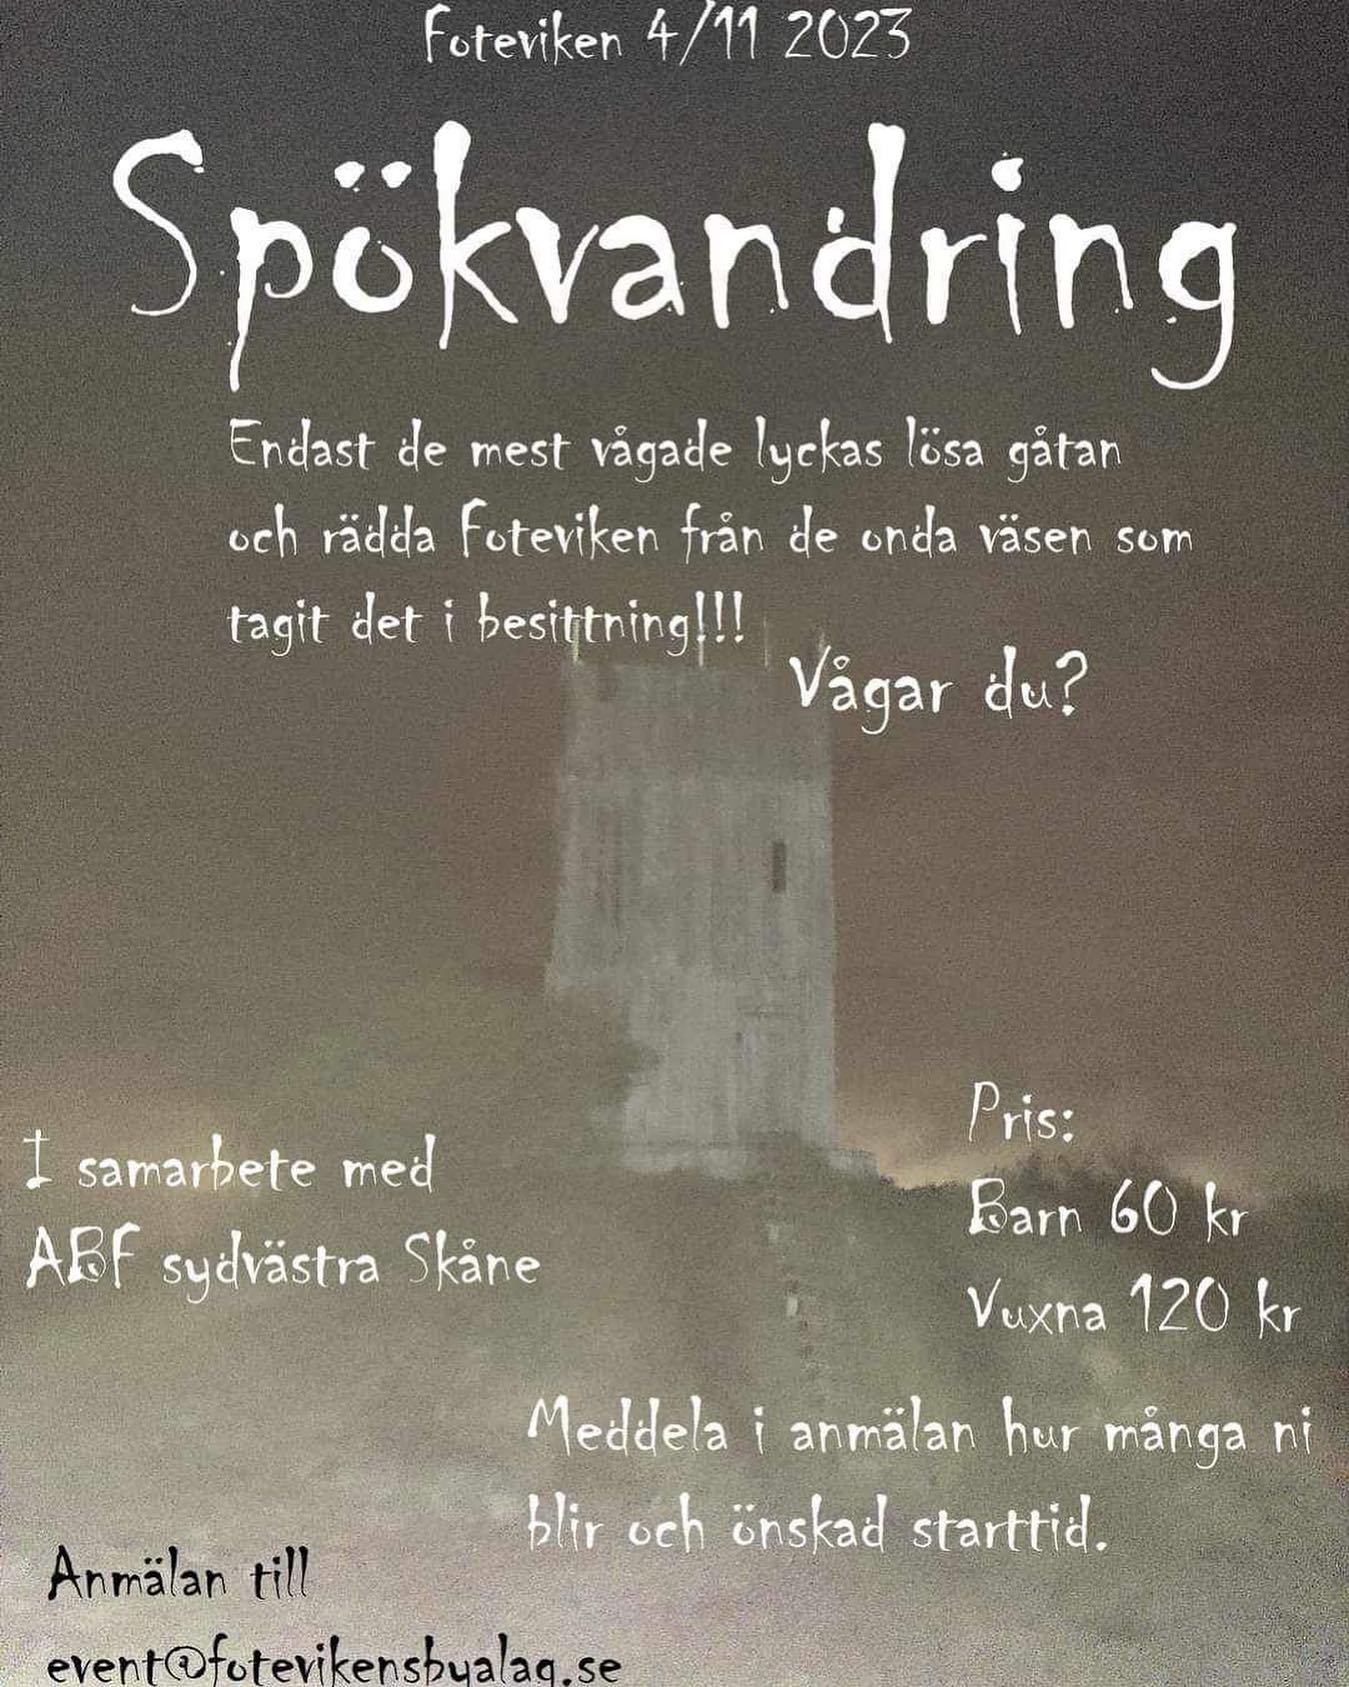 Spökvandring på Fotevikens Vikingamuseum - Goda Livet på Landet